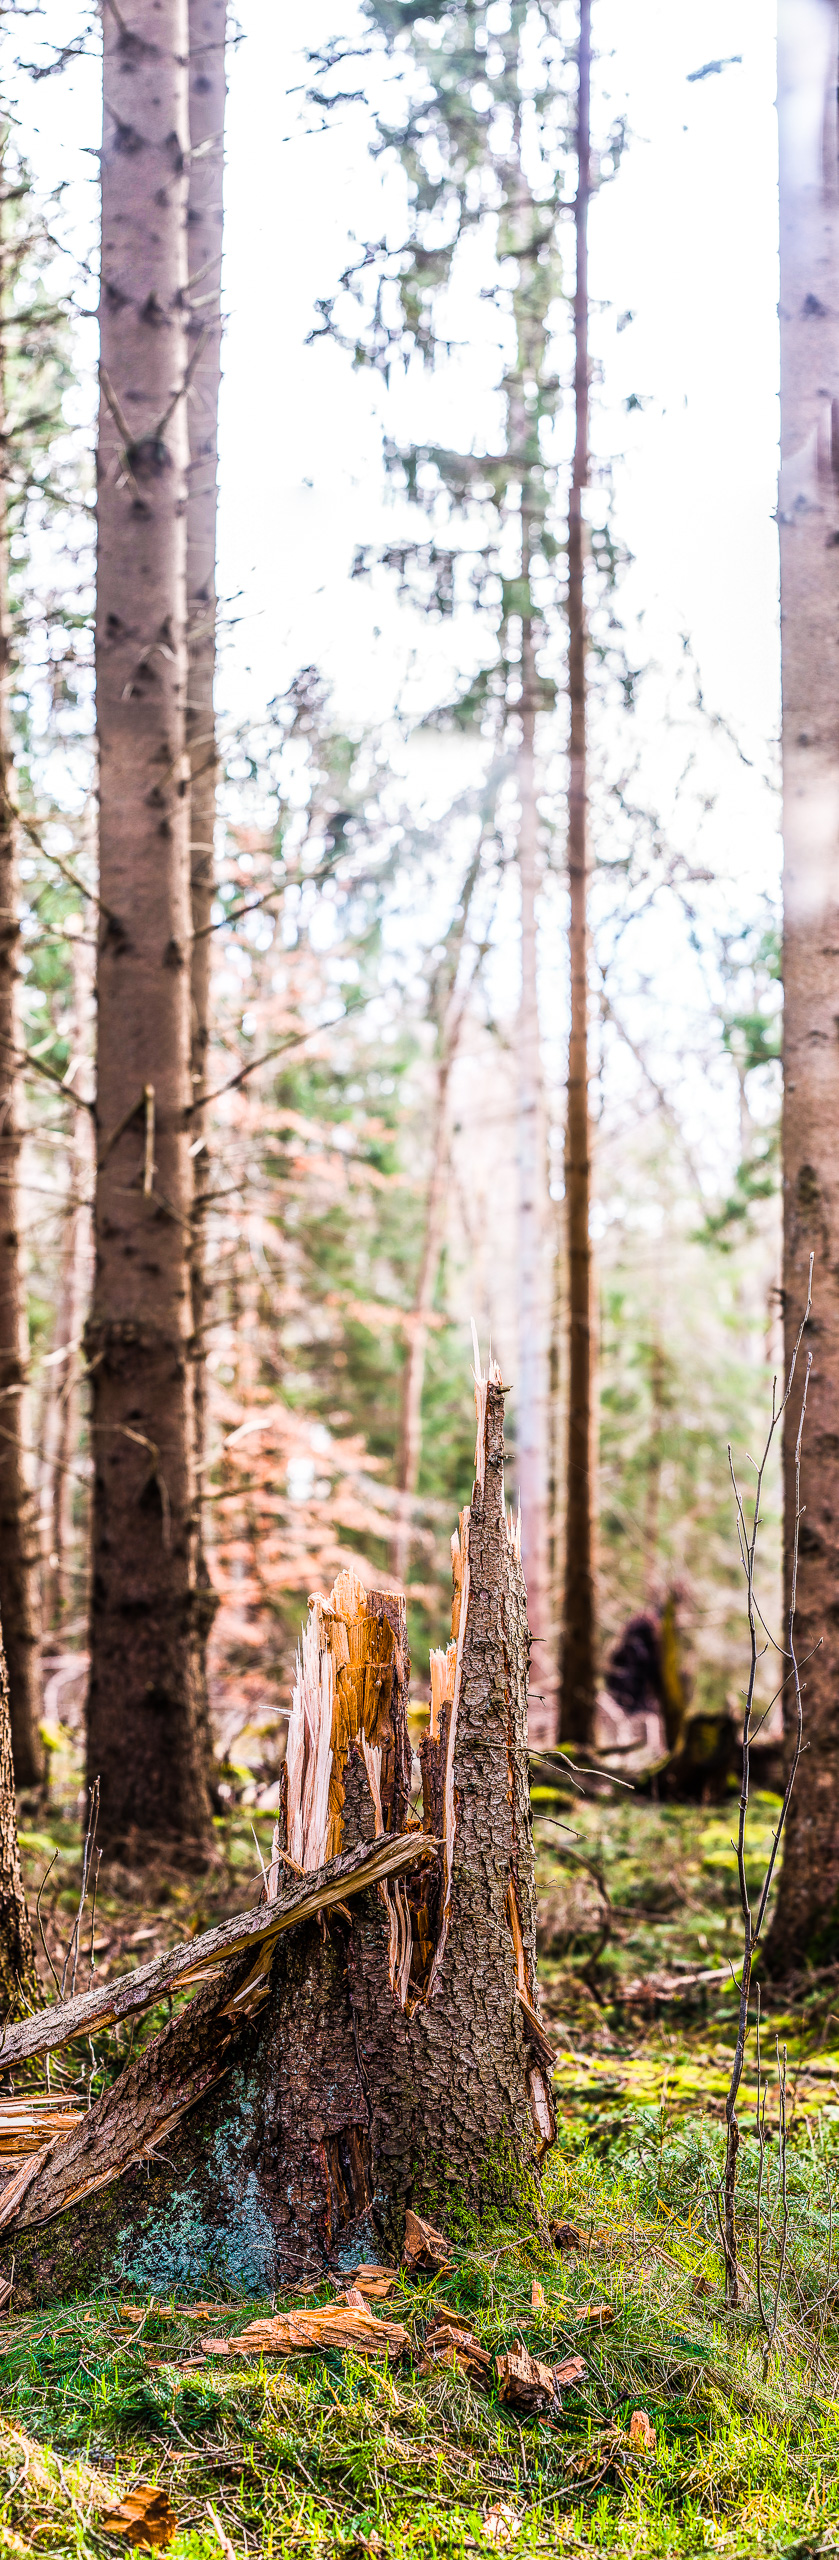 Panorama-Hochformat: Ein abgebrochener Baumstumpf steht auf einer Waldwiese, um ihn herum kahle Nadelbäume, von rechts scheint die Sonne ins Bild und überstrahlt den diffusen Waldhintergrund.